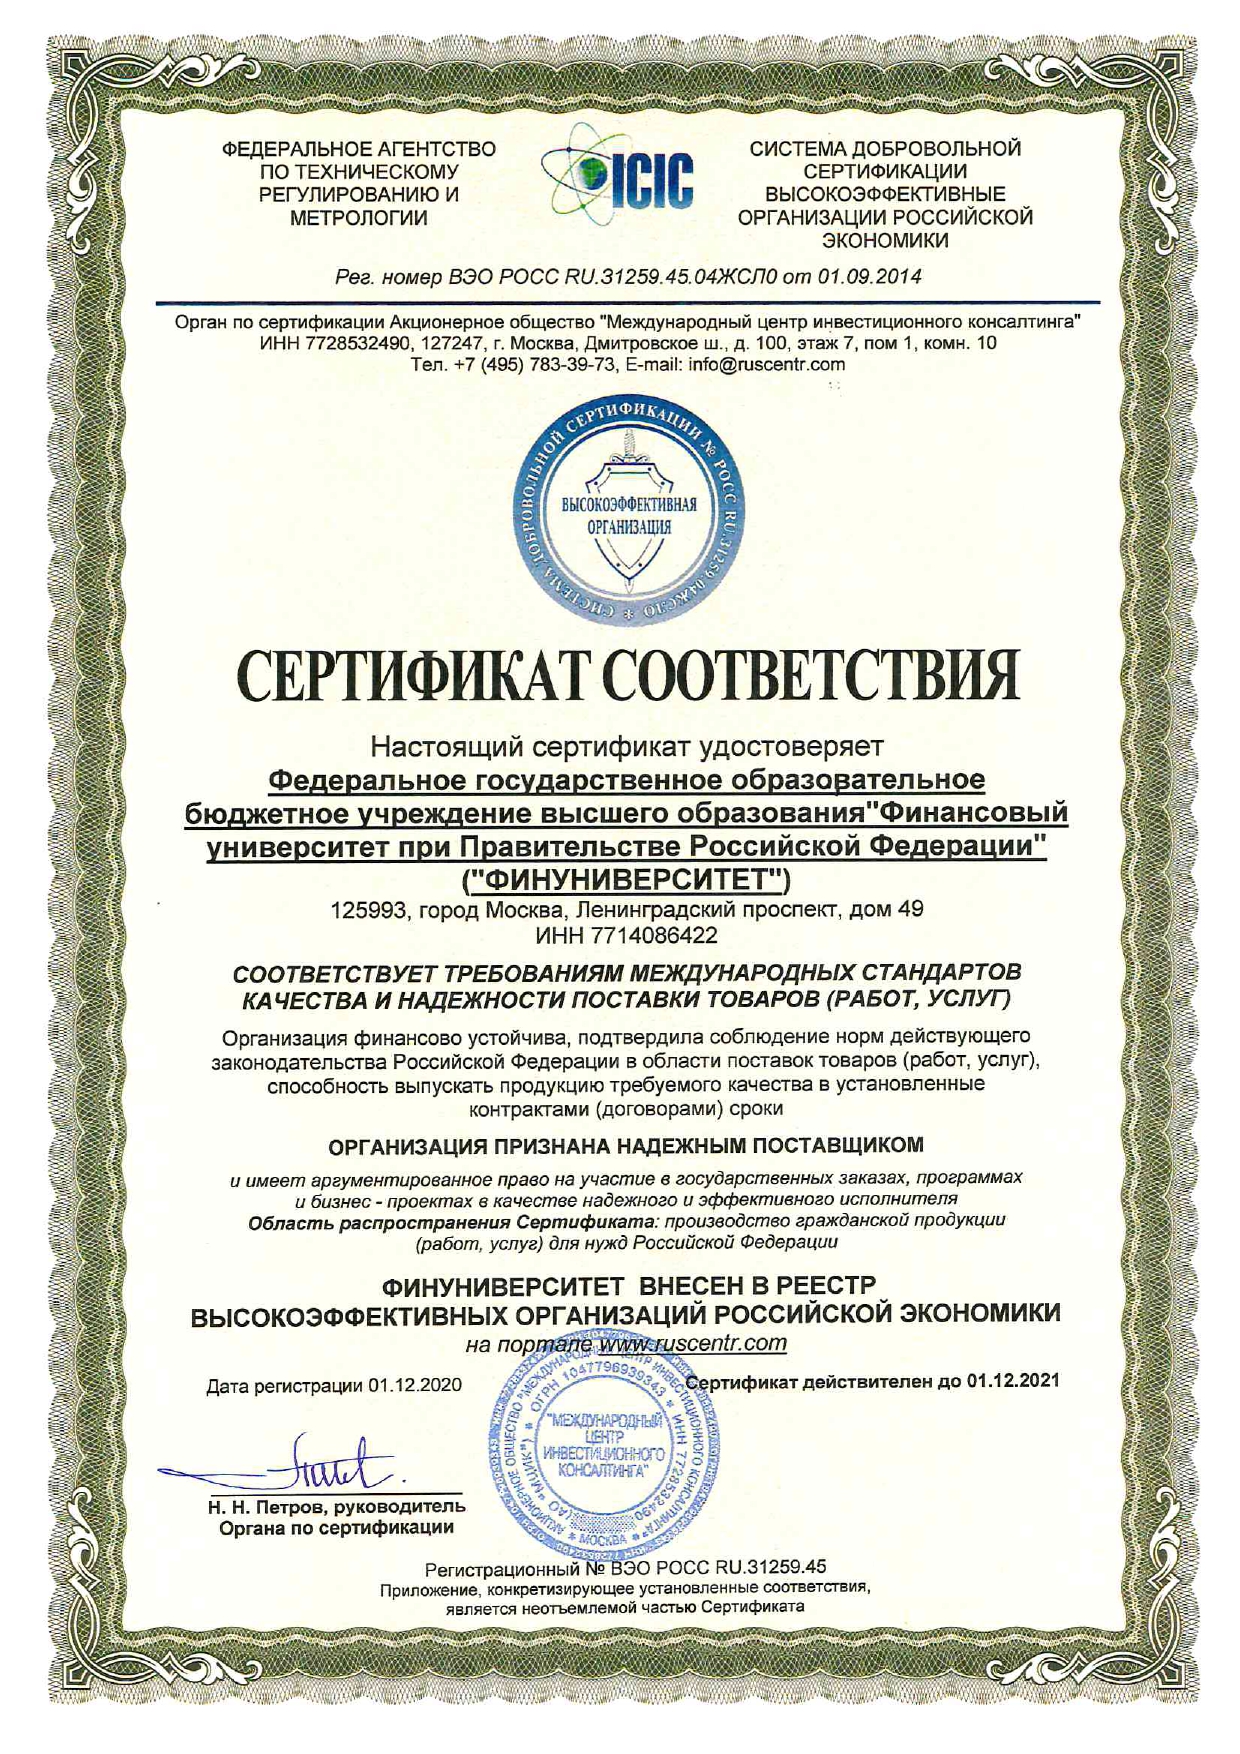 Сертификат соотвествия Надежный поставщик 2021_page-0001.jpg